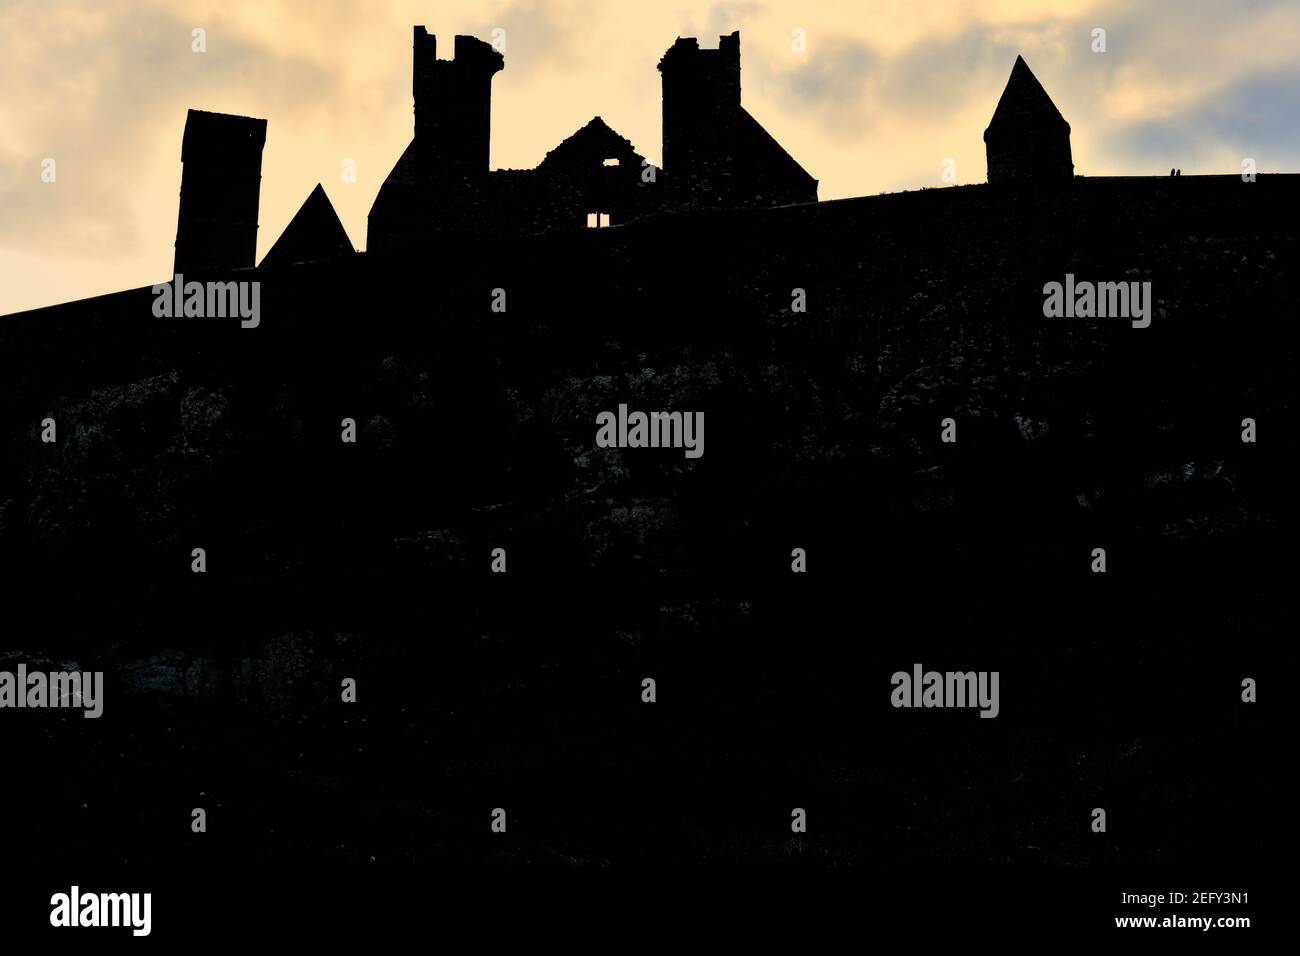 Cashel, County Tipperary, Irland. Kurz vor Tagesende wird der Rock of Cashel in Silhouette gegen den späten Abendhimmel gezeigt. Stockfoto